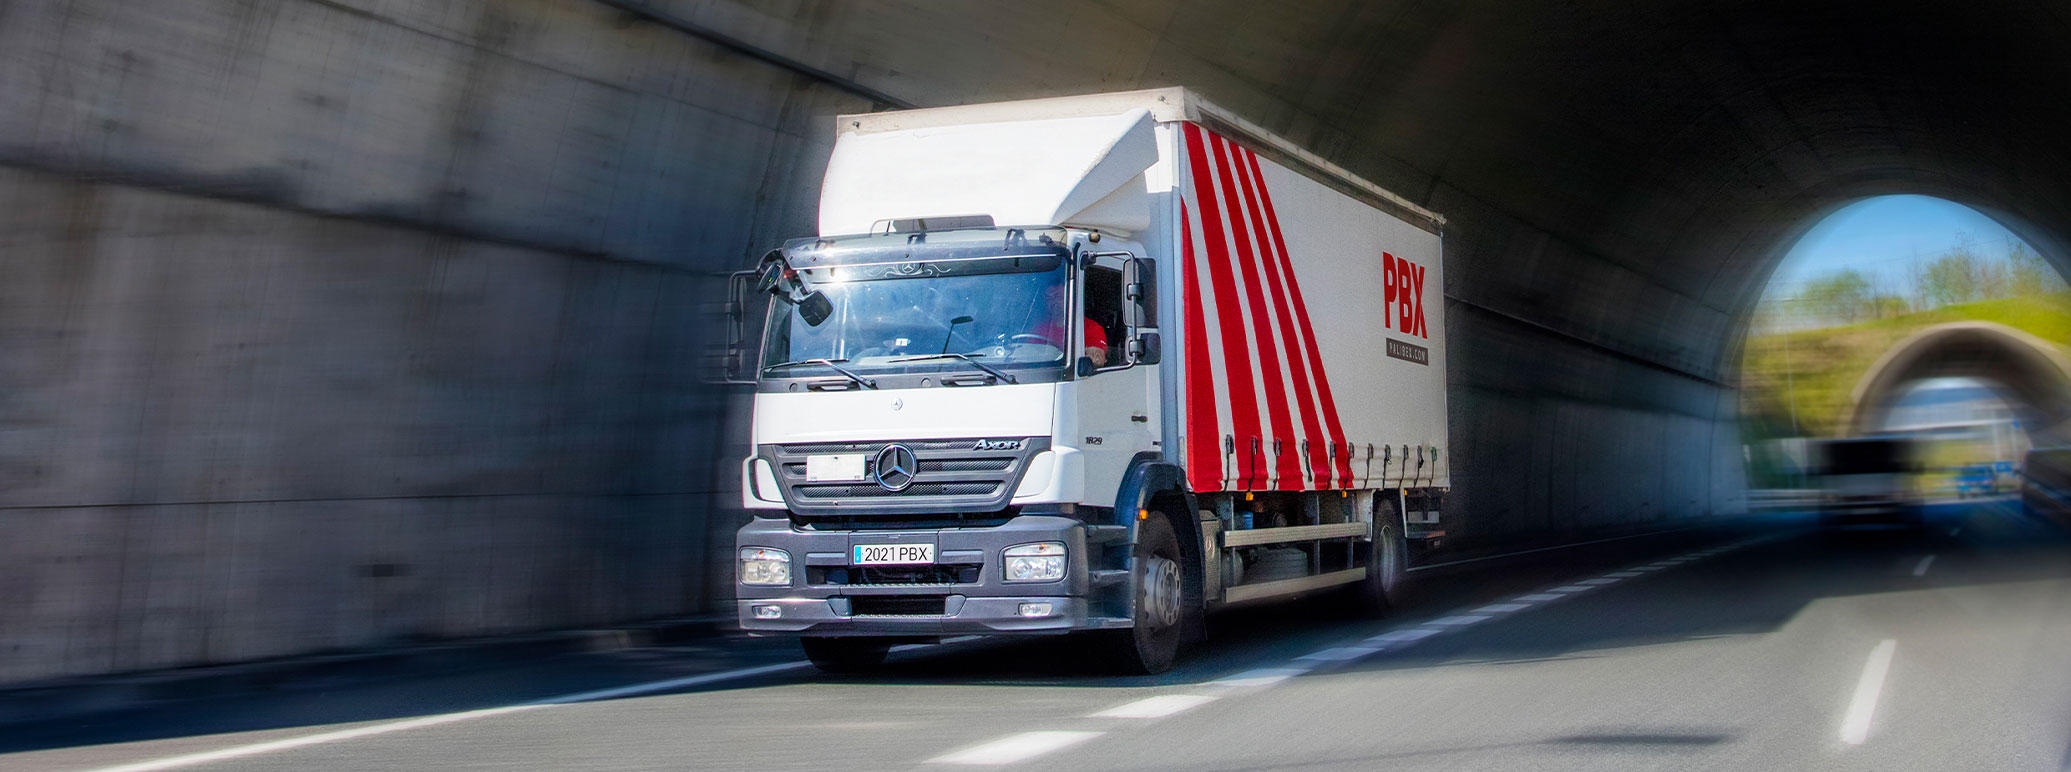 Transportes logisticos huesca - palibex - camion transporte